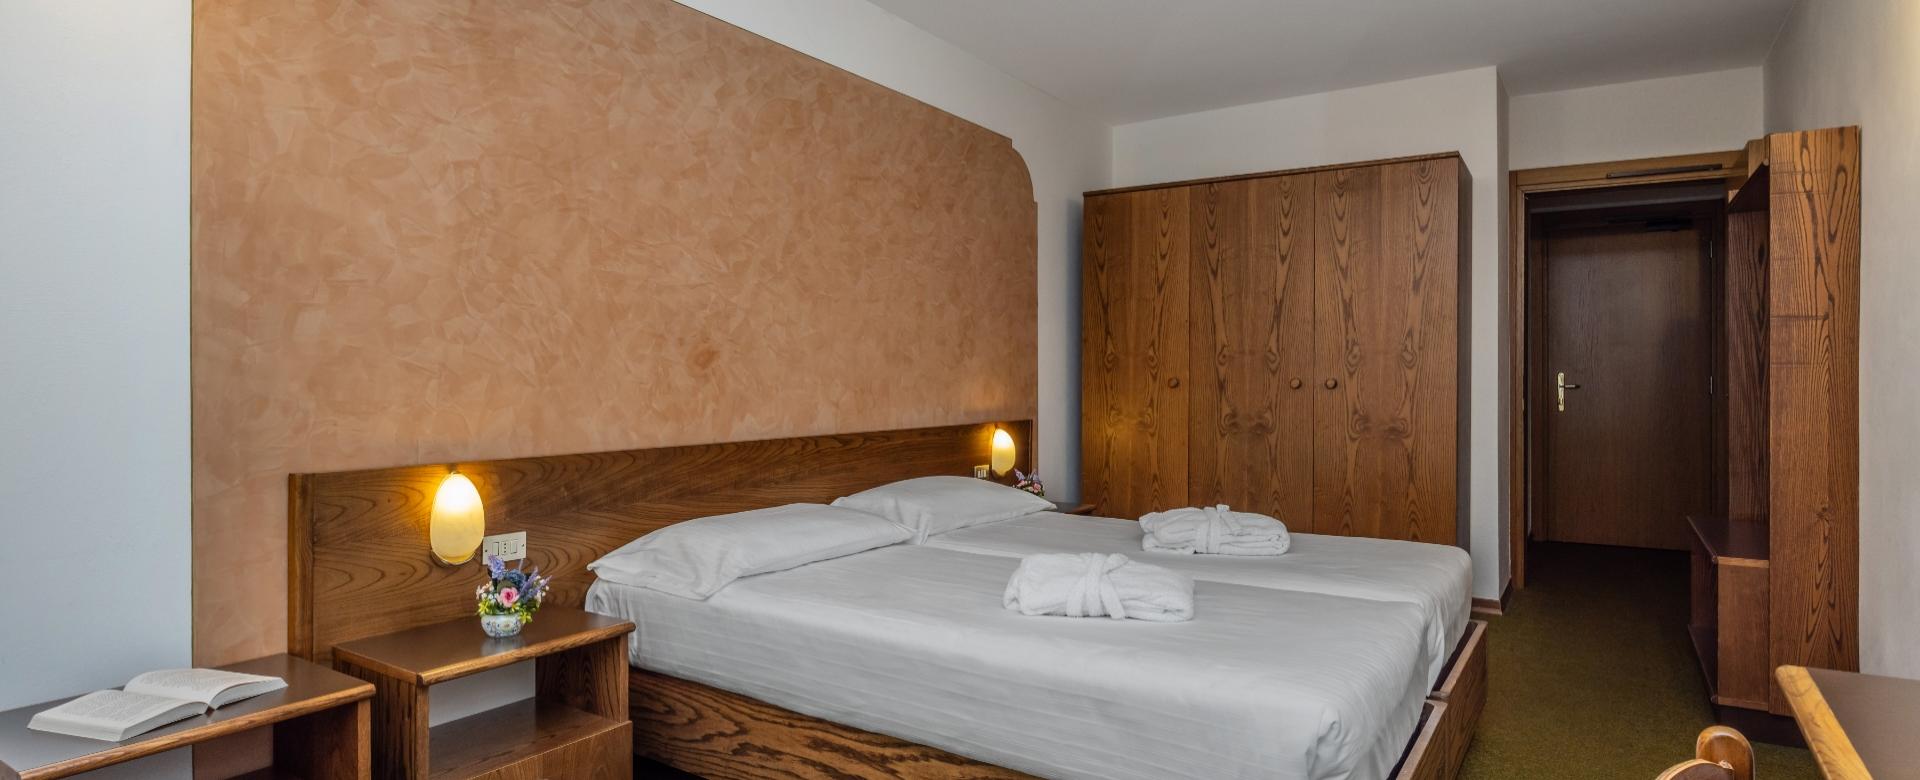 Gemütliches Hotelzimmer mit Doppelbett, Kleiderschrank und warmem Licht.